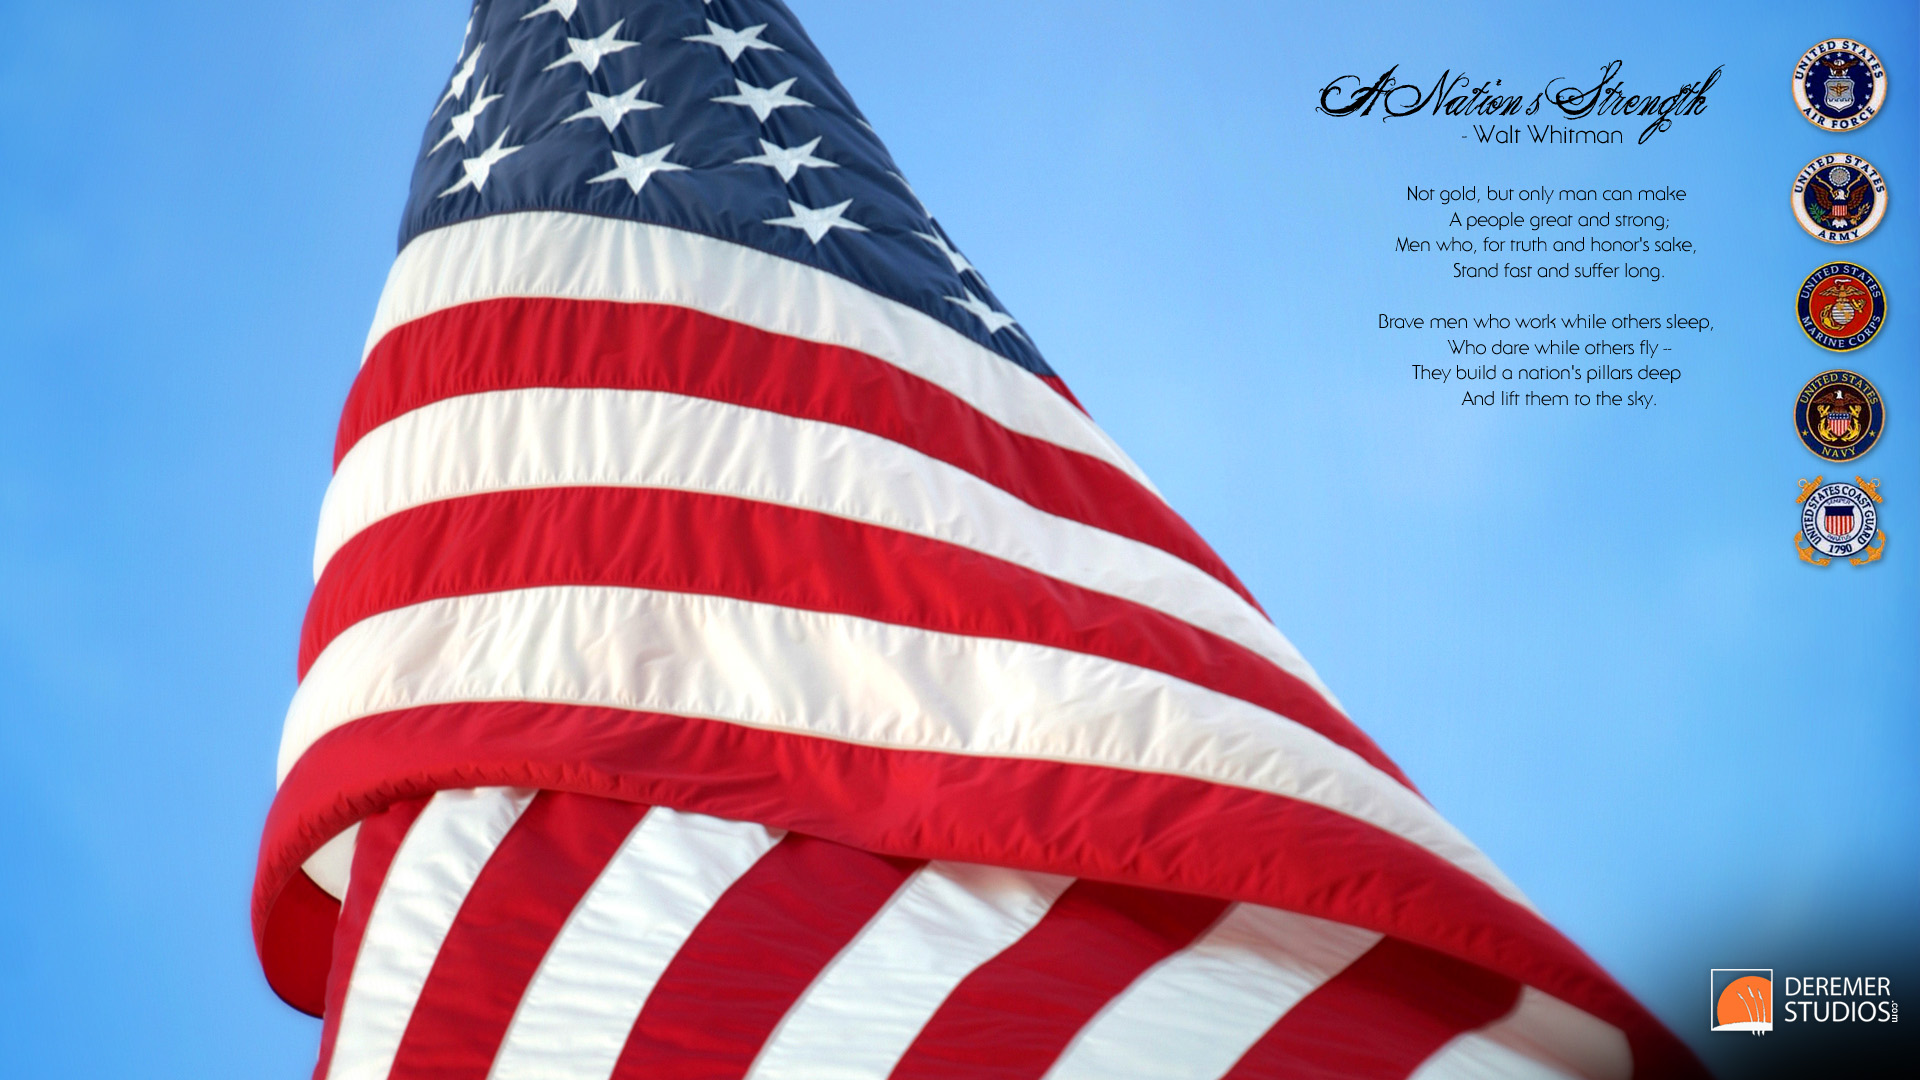 ベテランの壁紙,アメリカ合衆国の旗,国旗,アメリカの旗の日,独立記念日,退役軍人の日